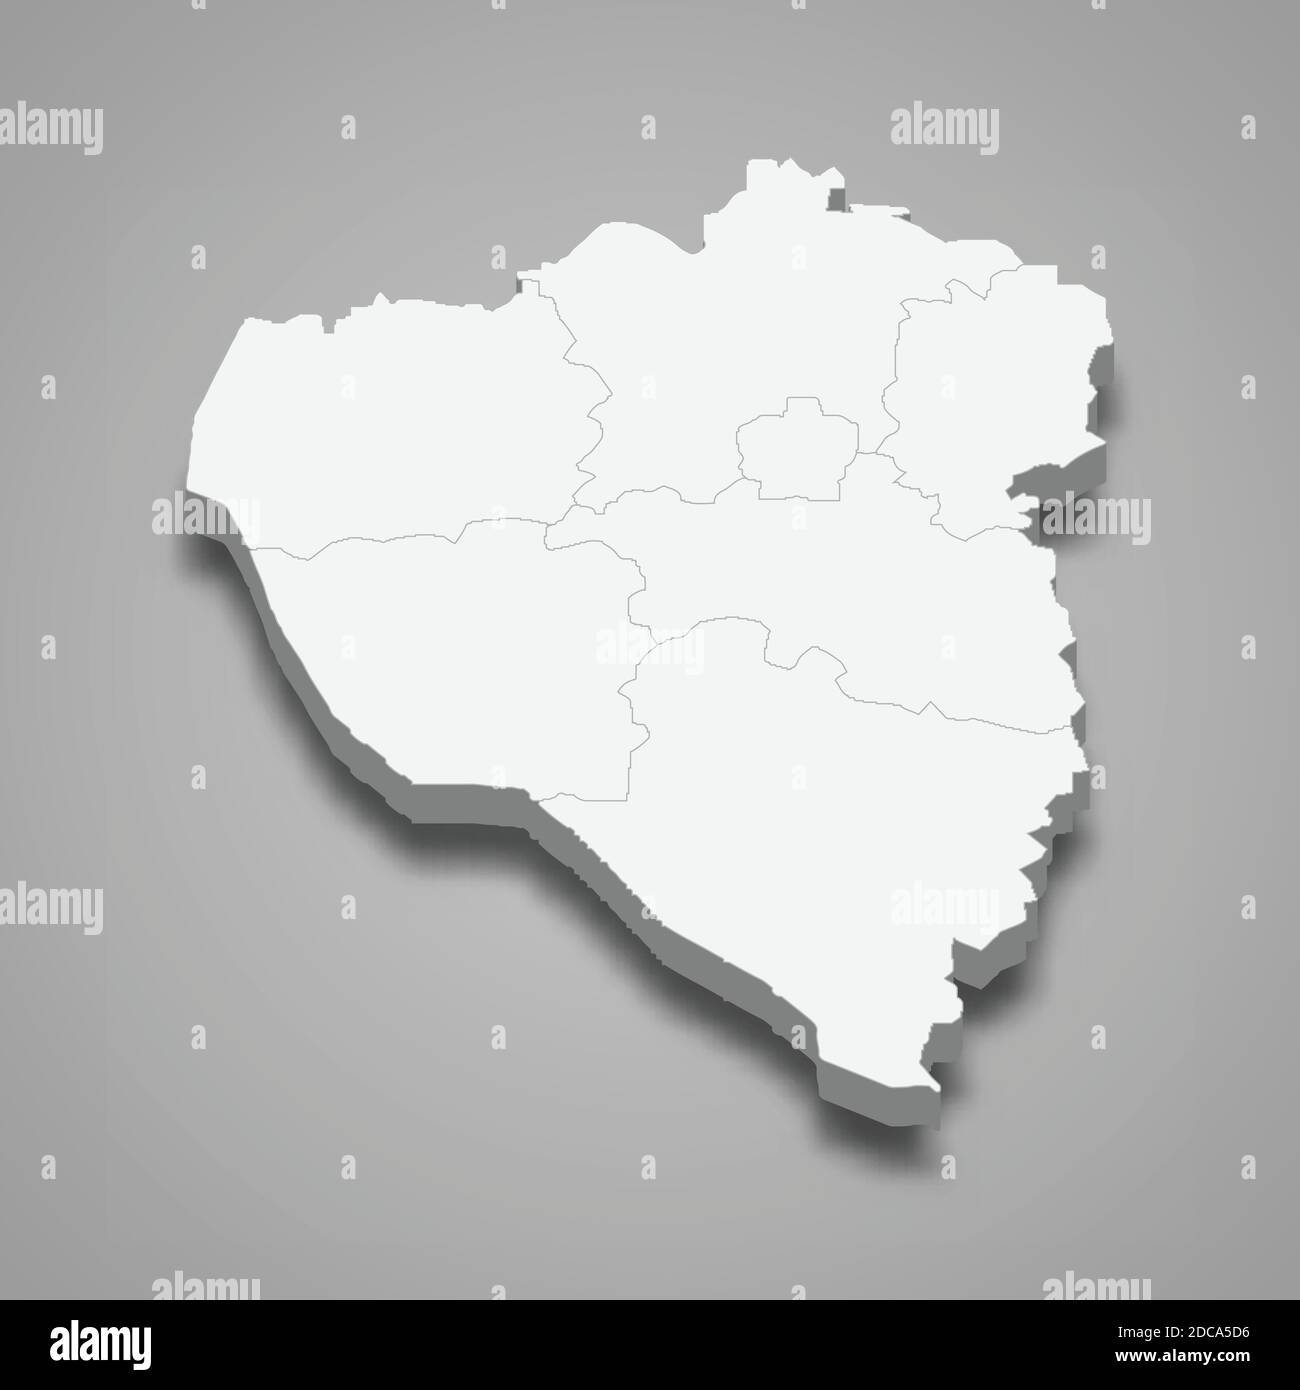 La carte isométrique 3d de Plzen est une région de la République tchèque, illustration vectorielle Illustration de Vecteur